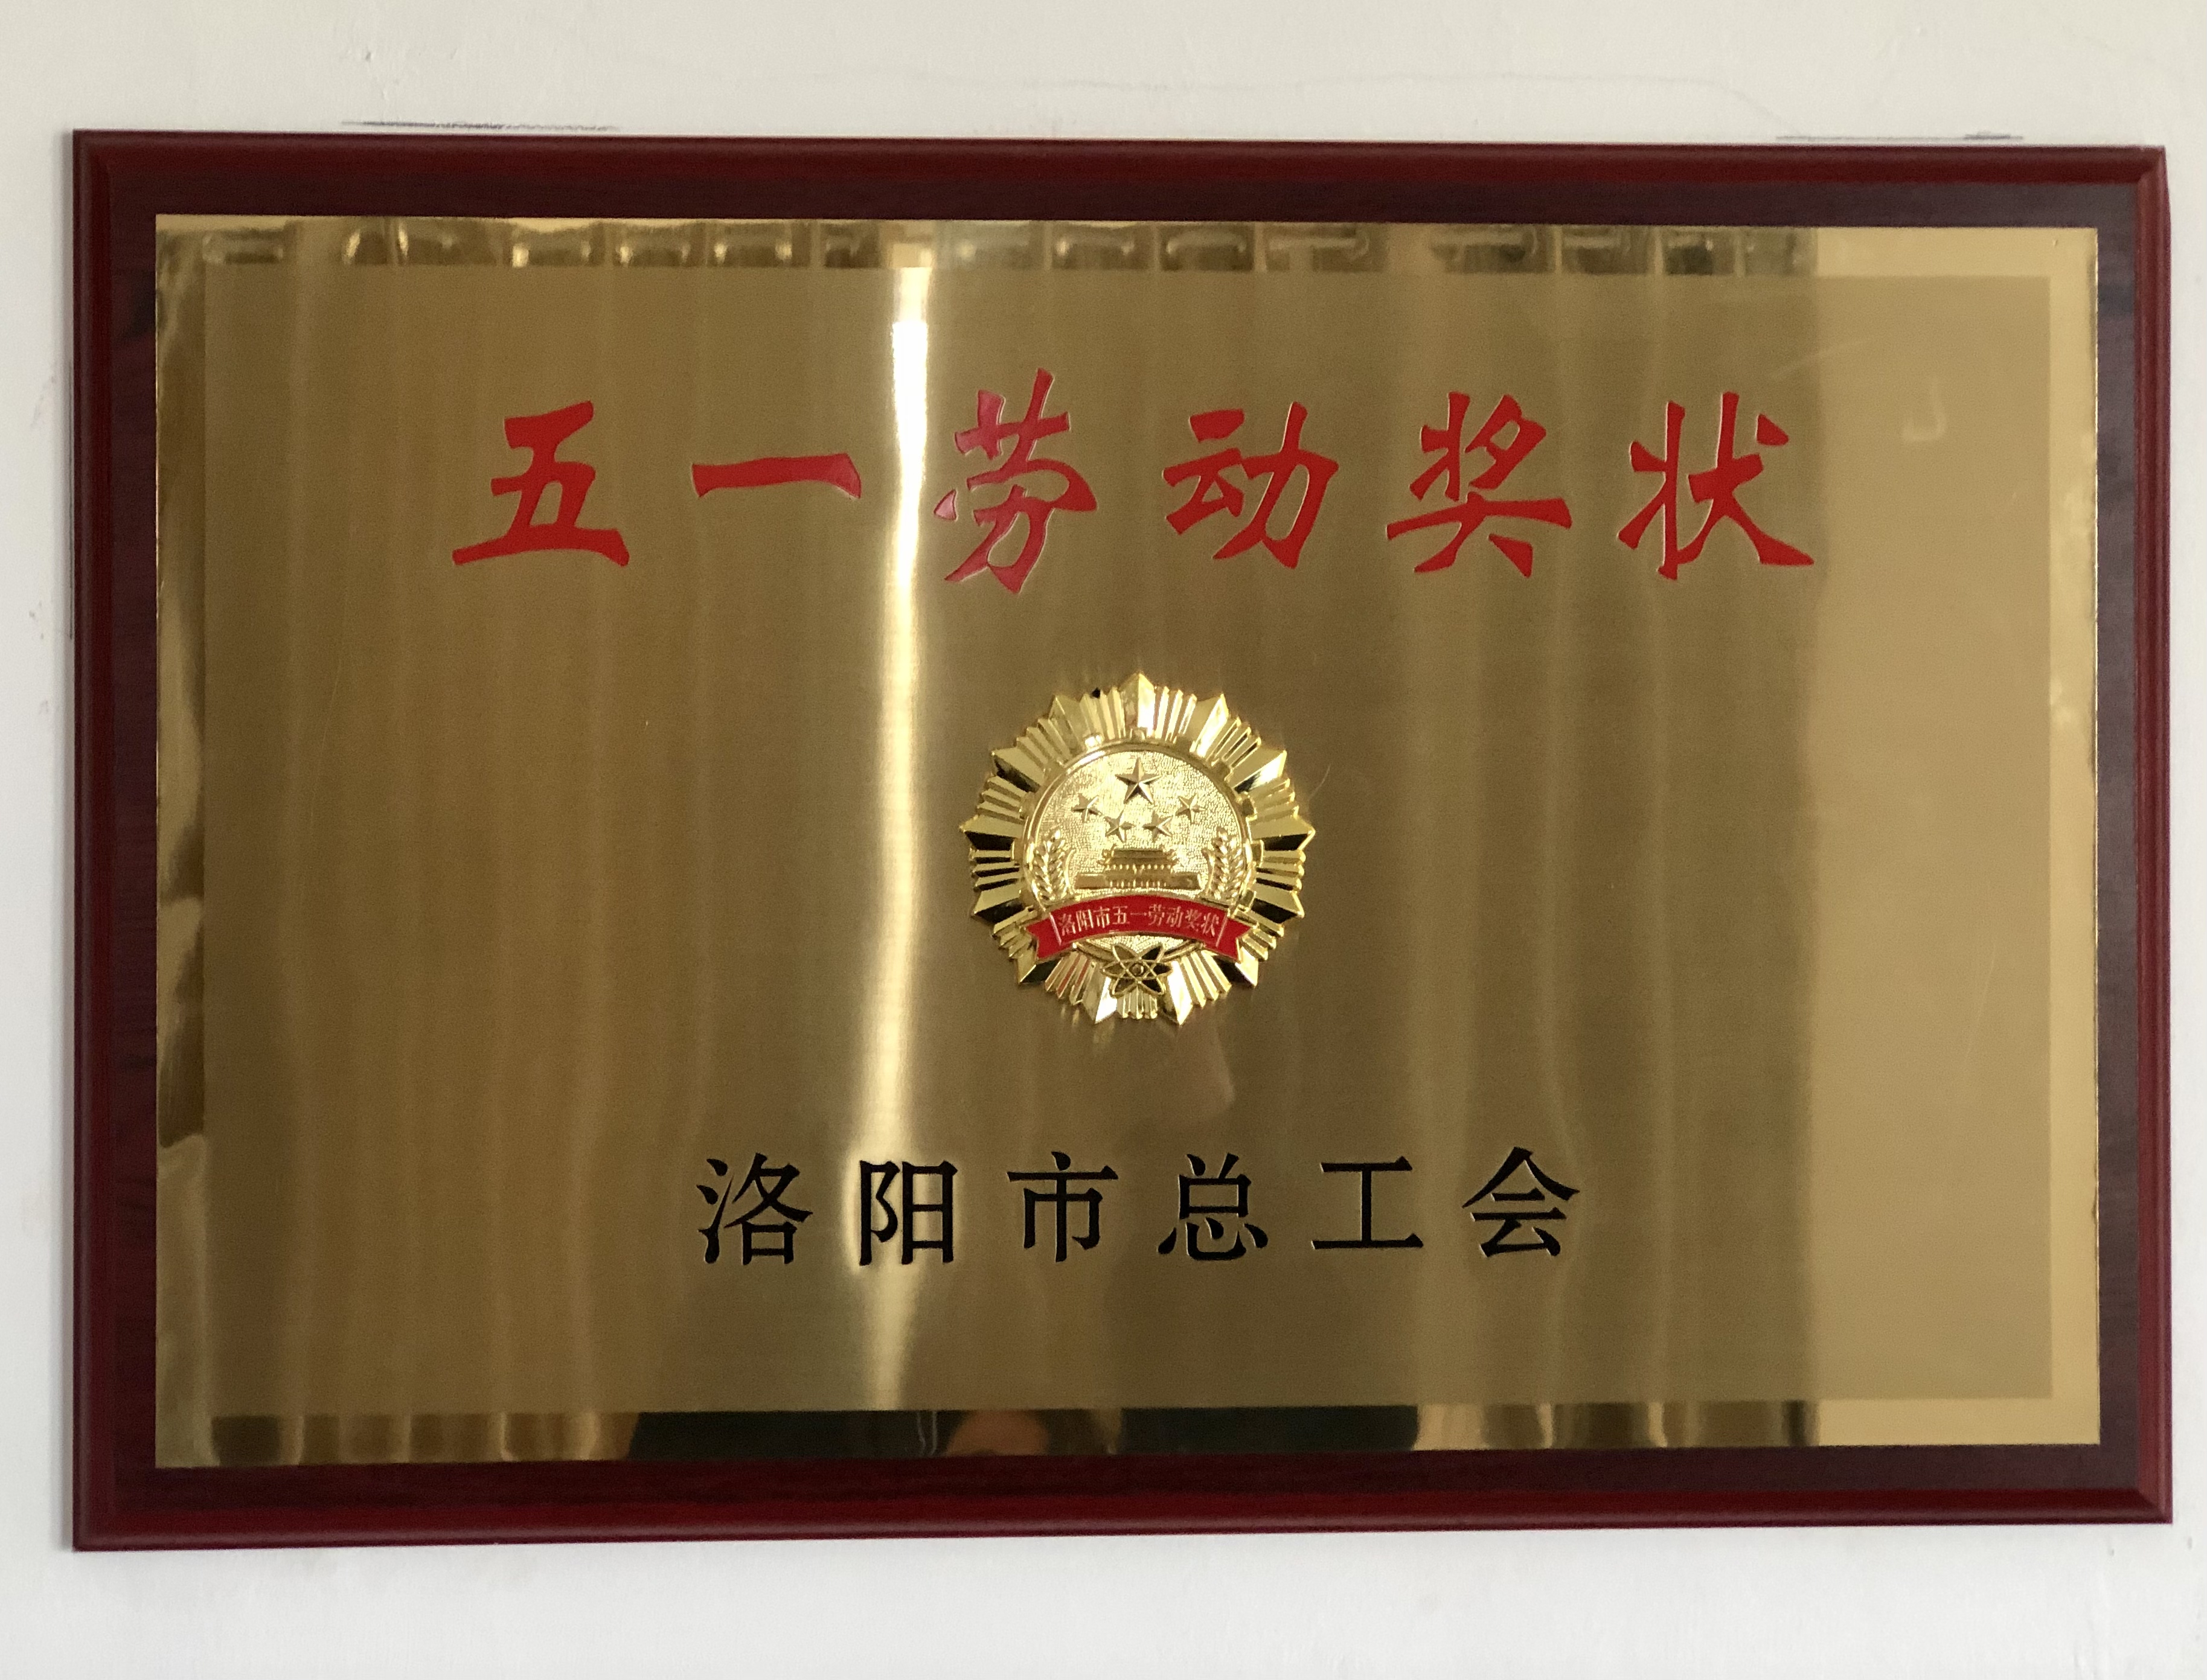 Jinxiang Company won the "May 1st Labor Award" in Luoyang City